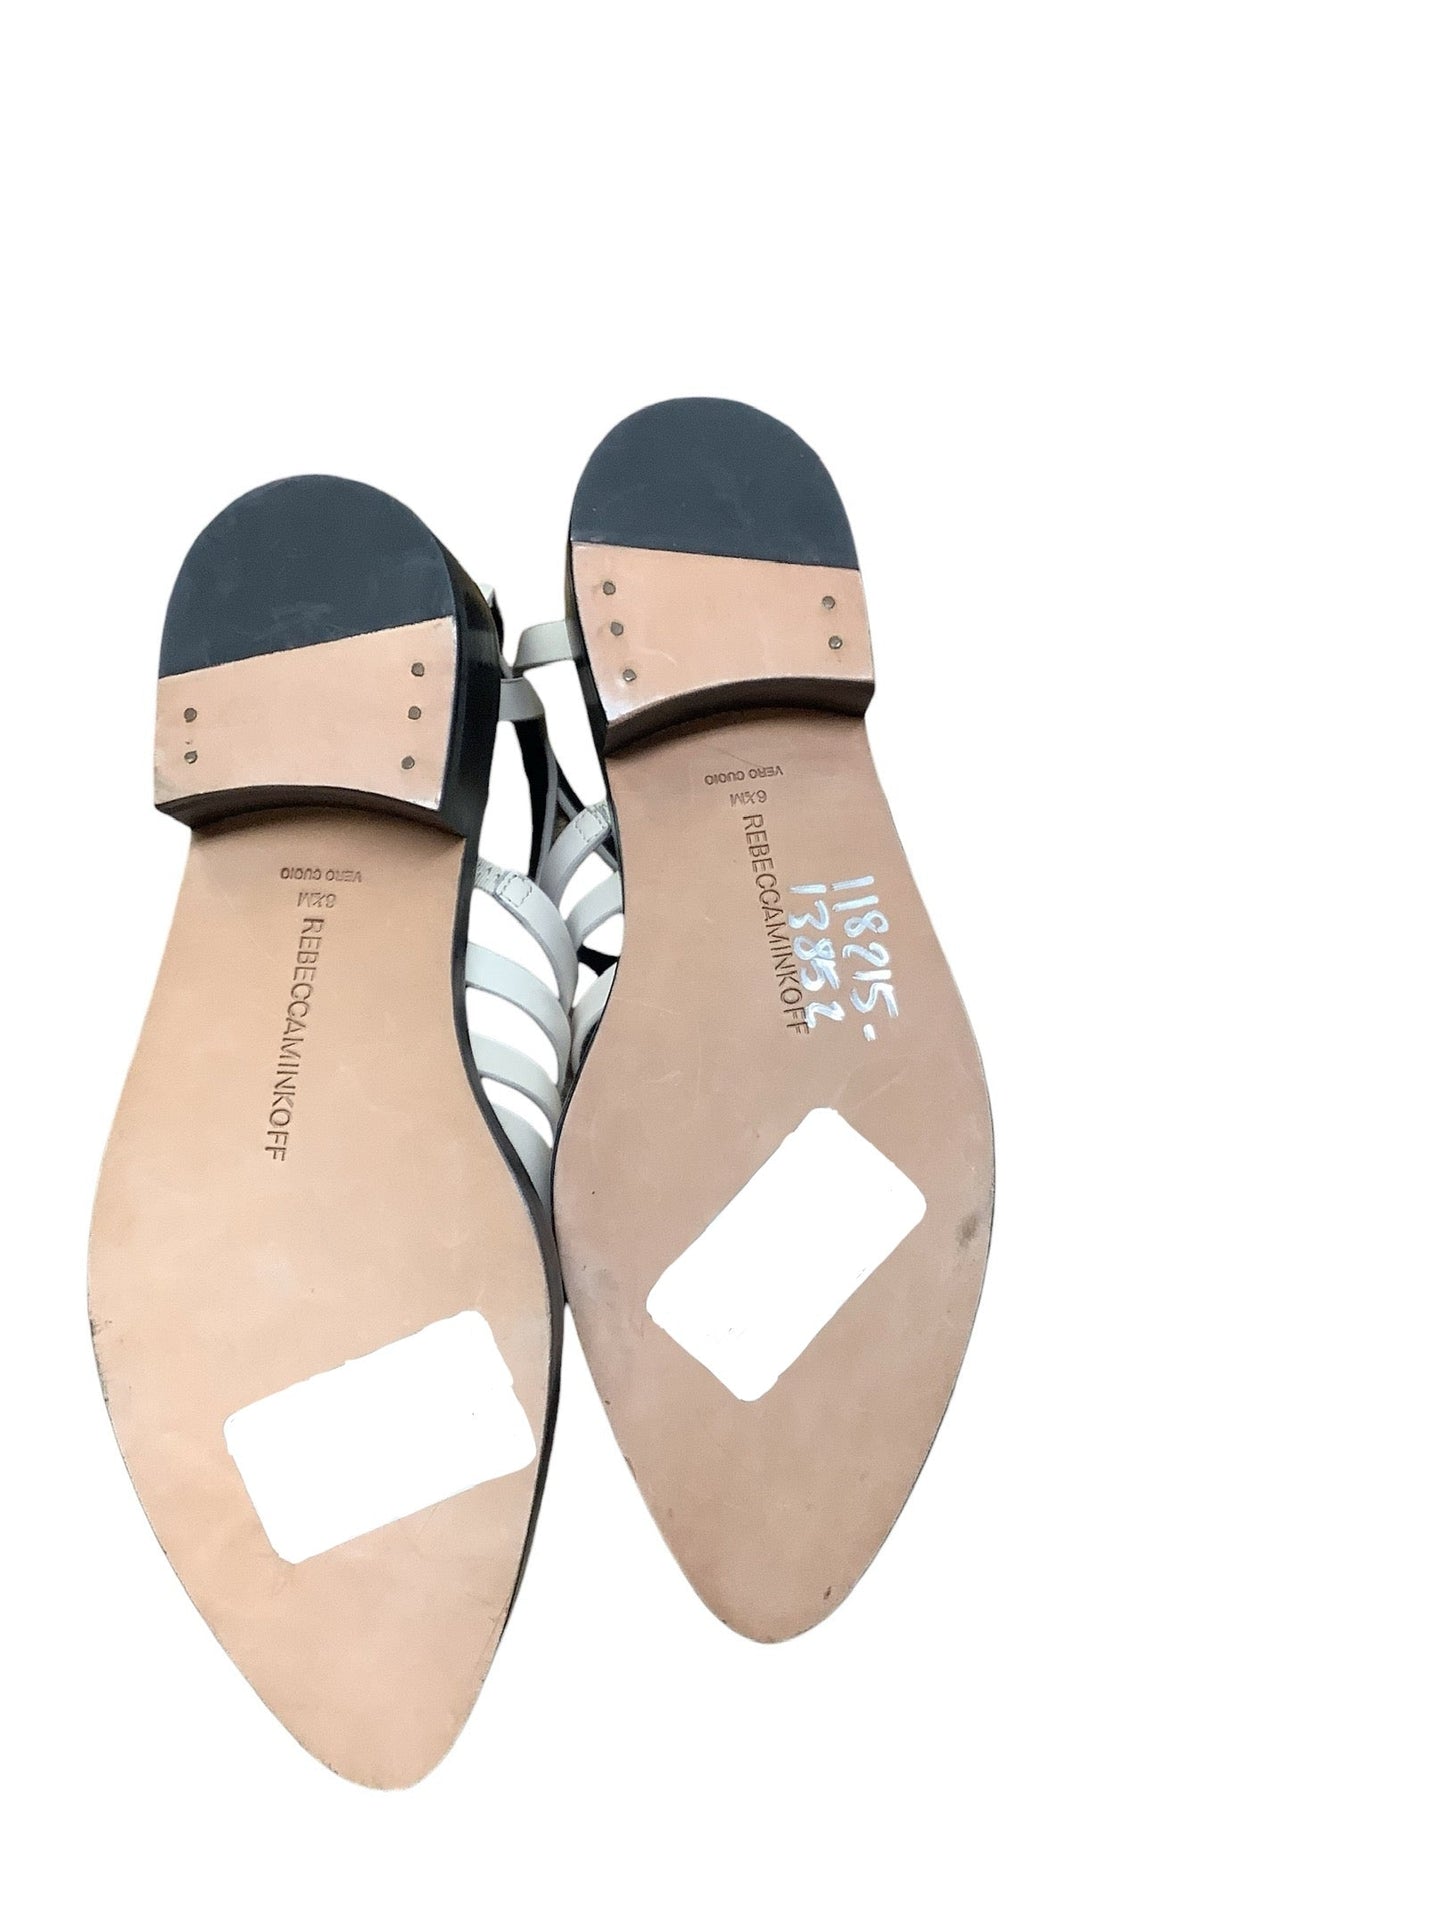 Sandals Designer By Rebecca Minkoff  Size: 6.5